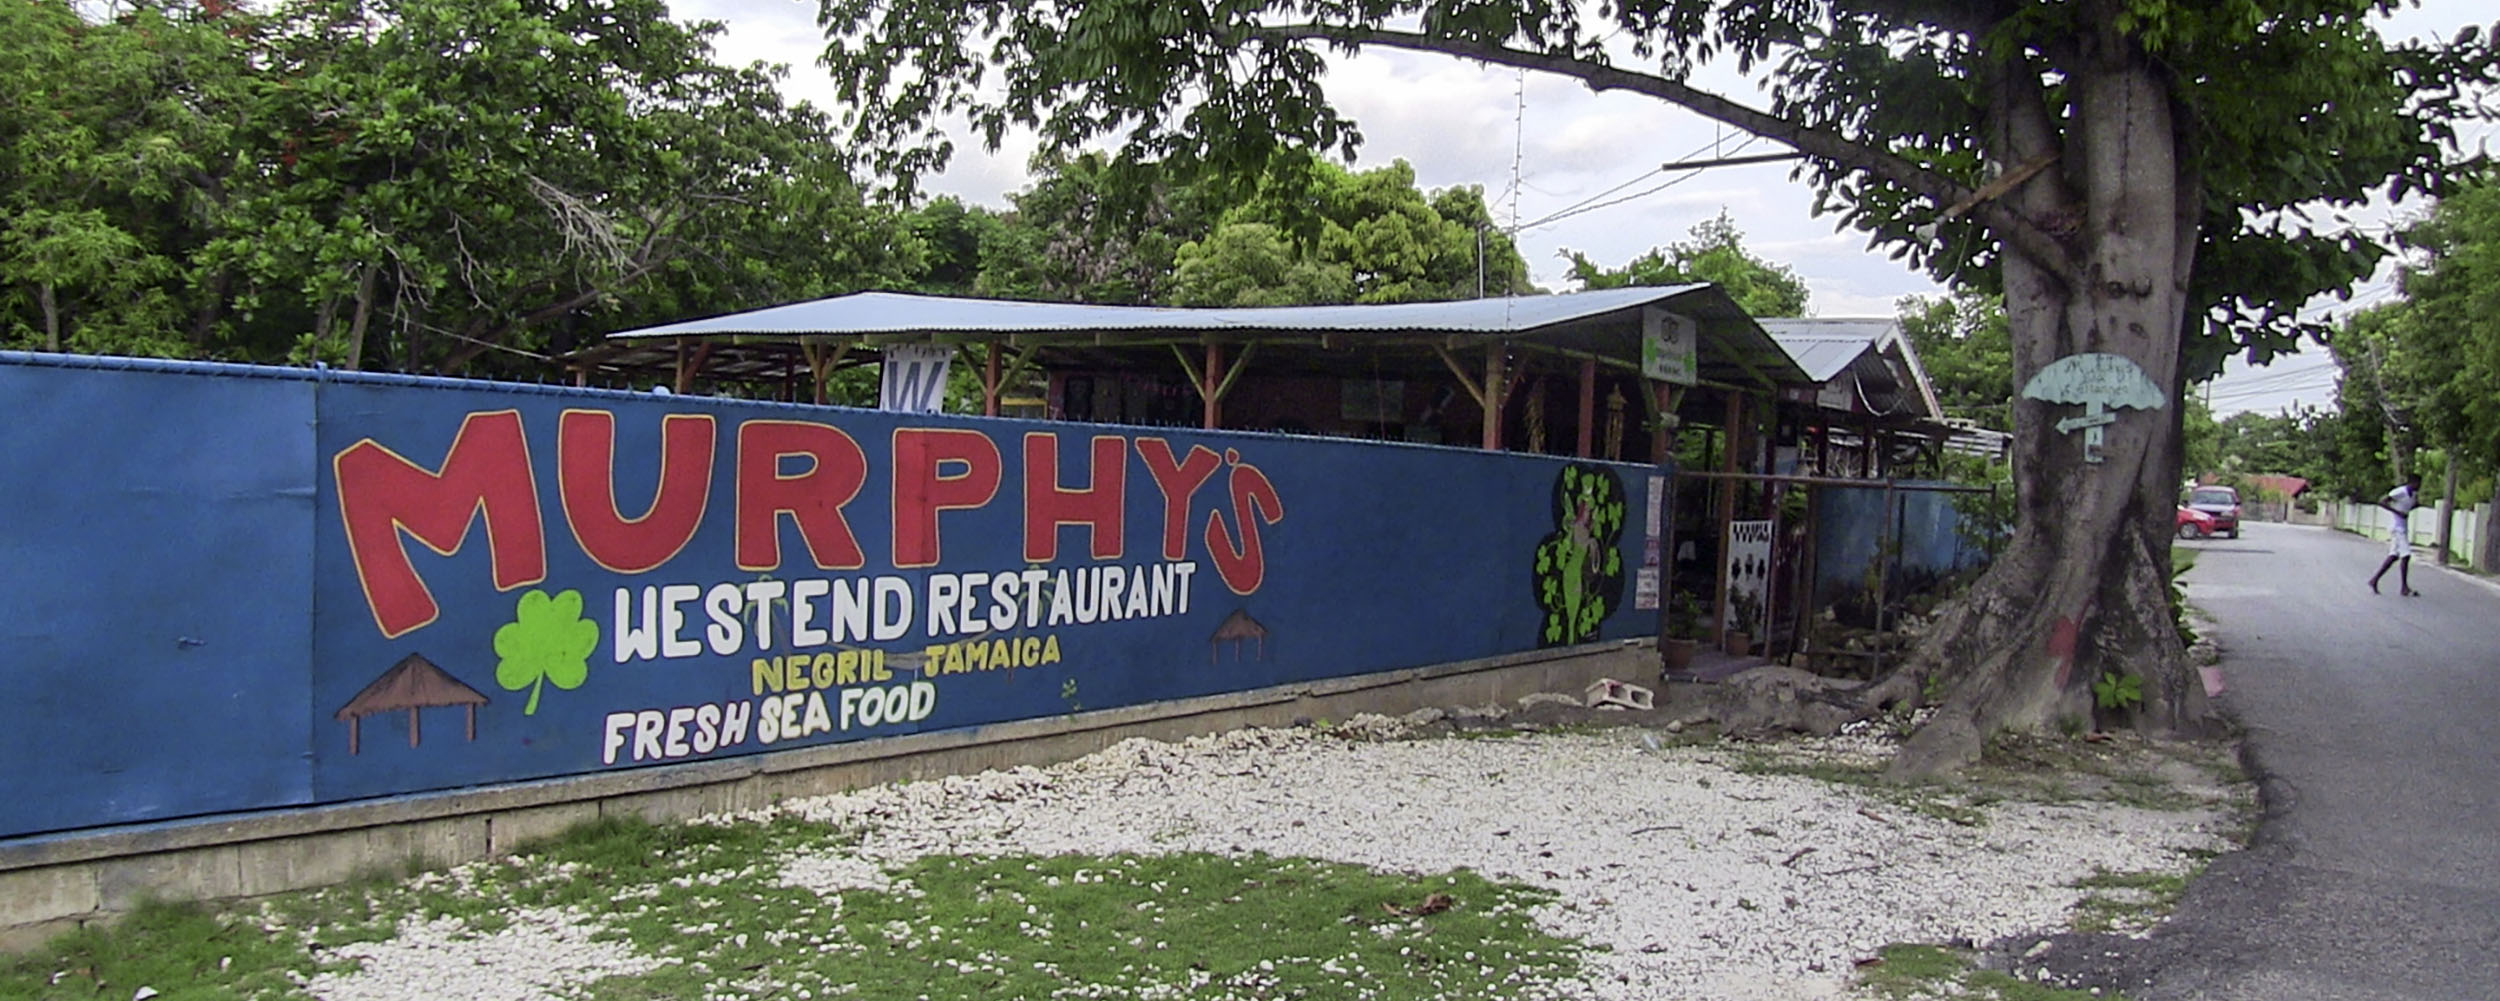 Murhpy's West End Restaurant, West End, Negril Jamaica